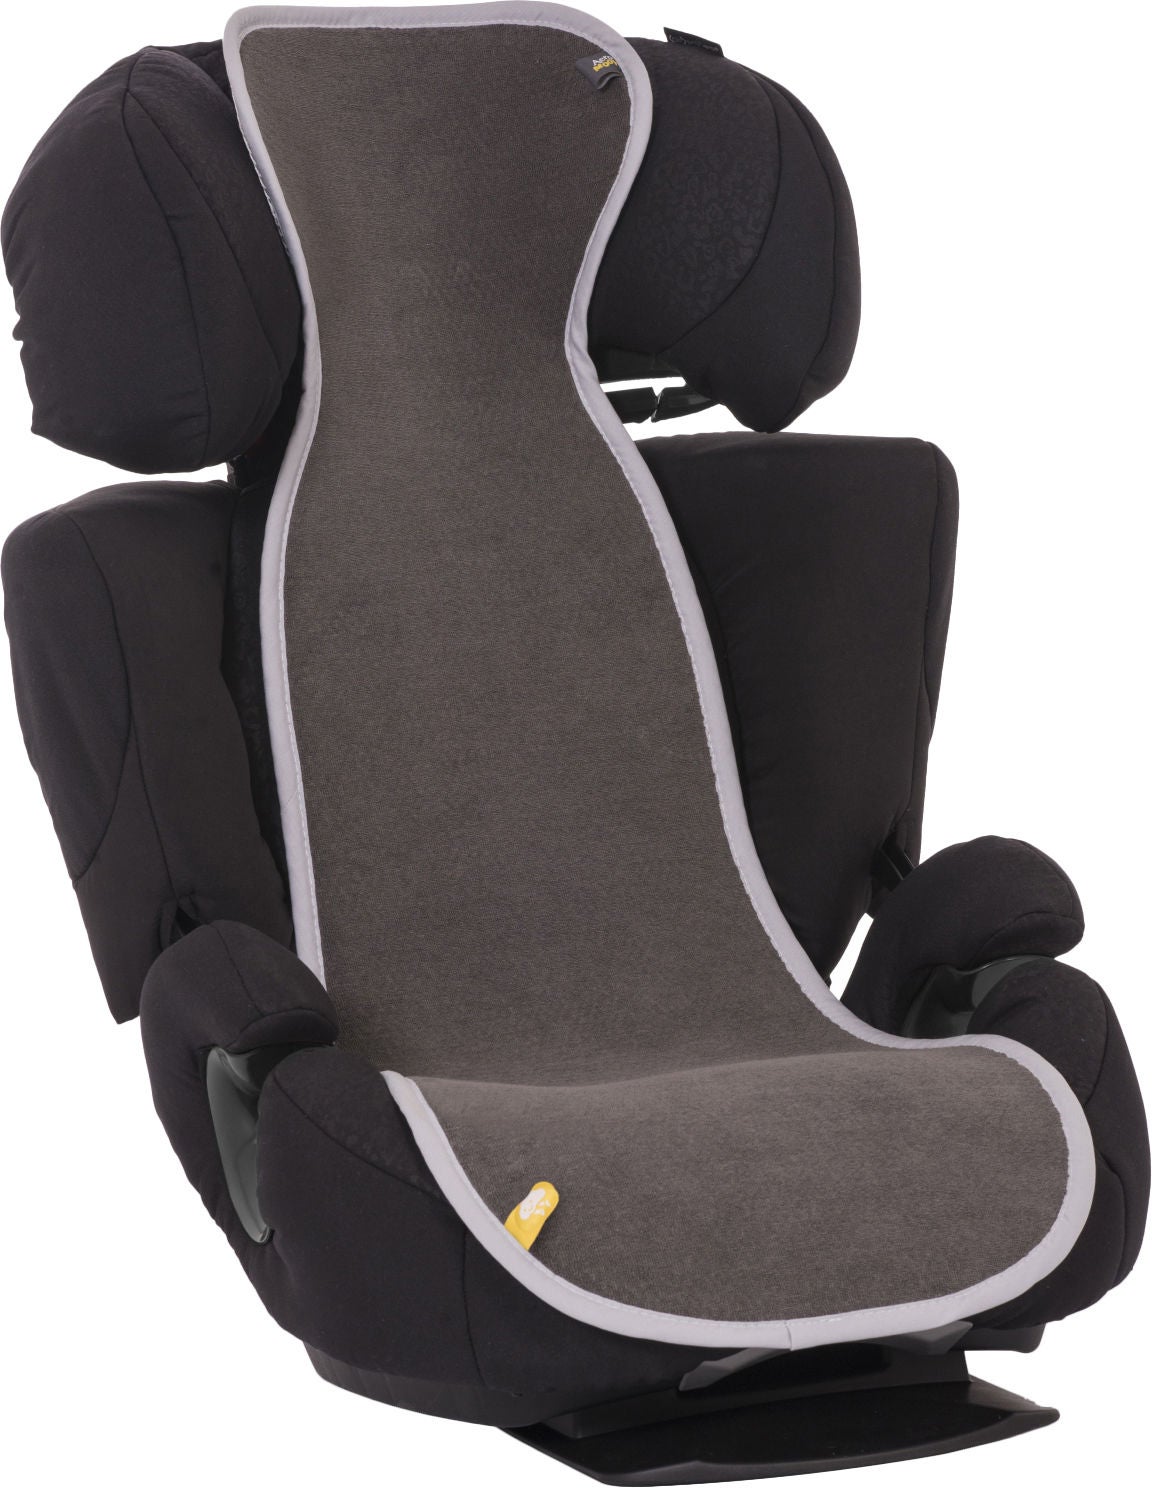 AeroMoov luftdurchlässige Sitzauflage für Kindersitz (15-36 kg), Dunkelgrau von AeroMoov